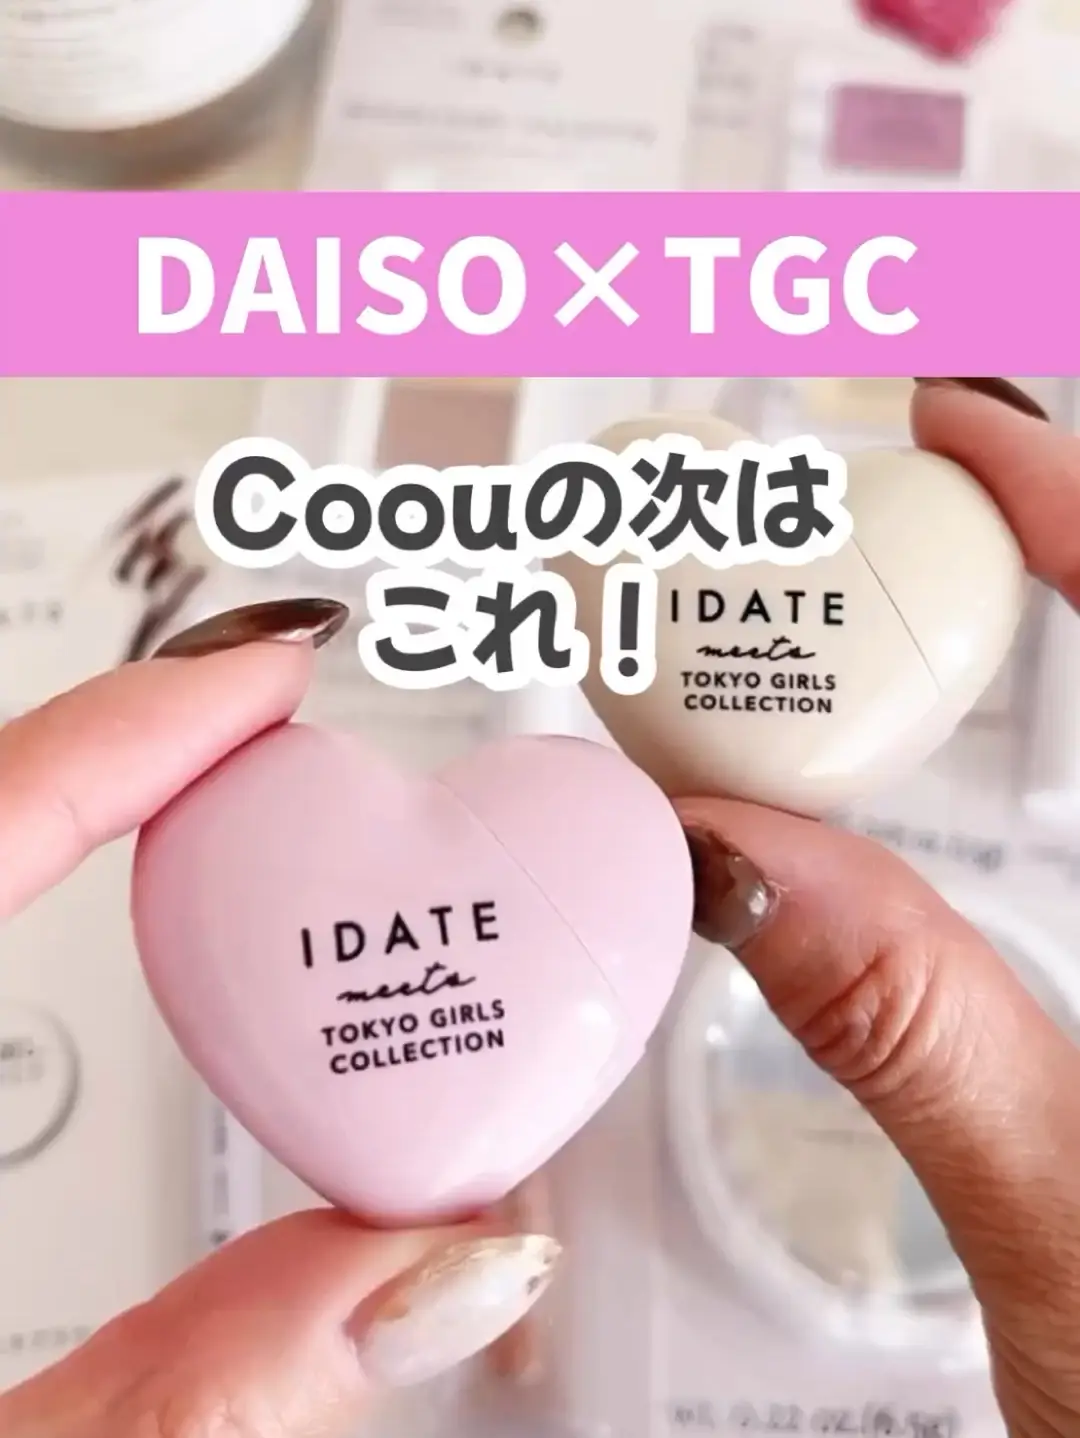 【DAISO×TGC】新コスメブランド『IDATE』✨